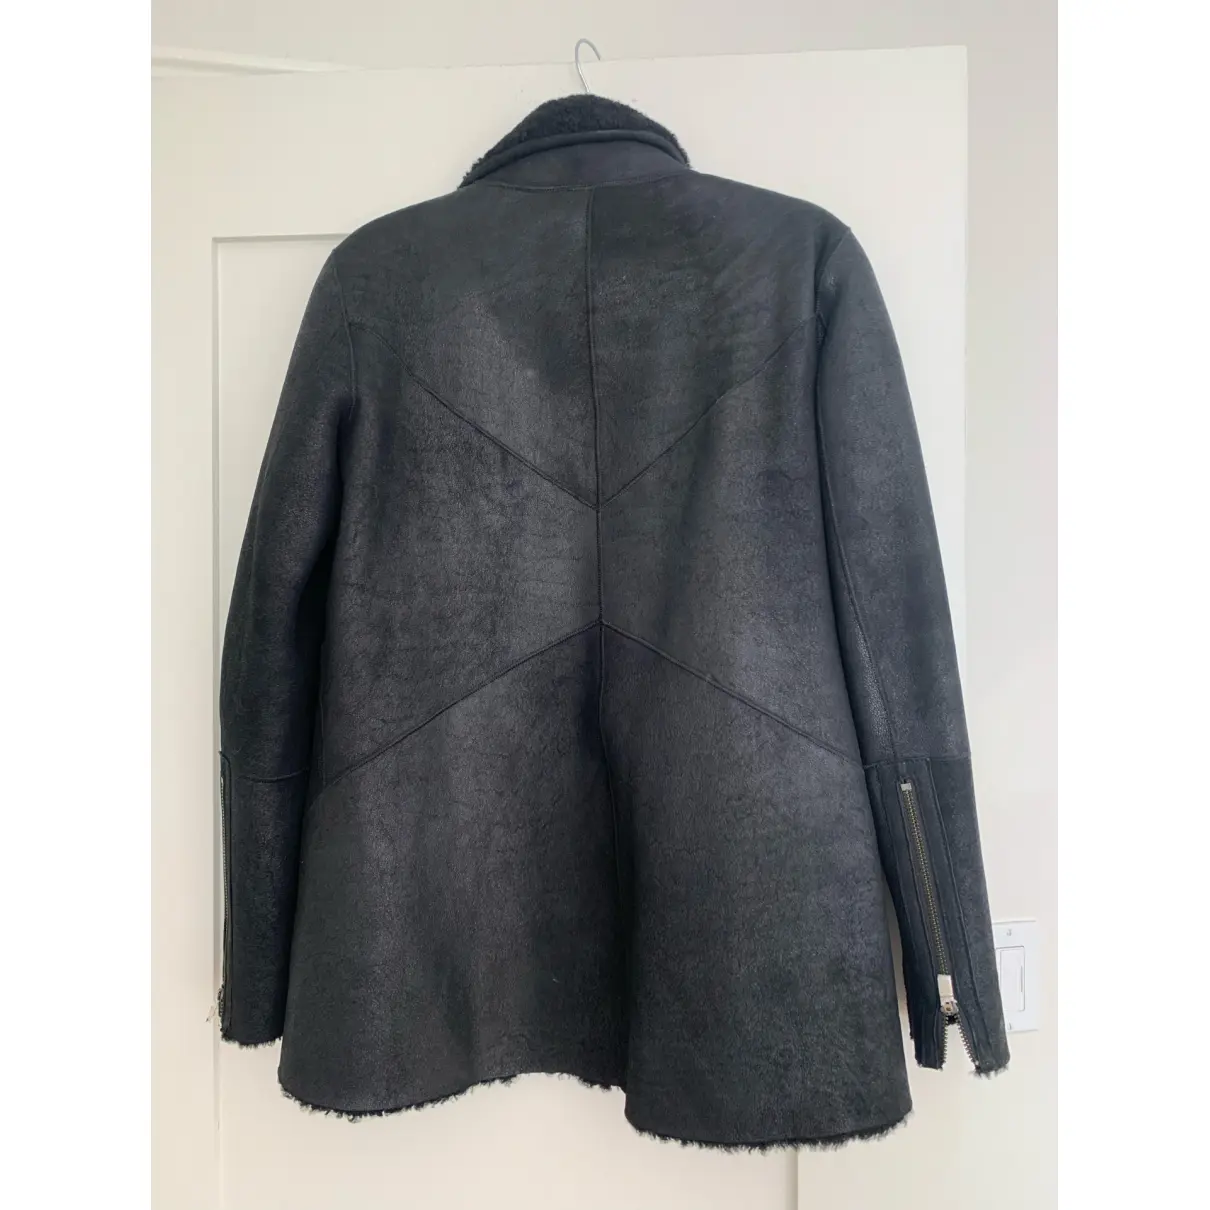 Buy Helmut Lang Shearling jacket online